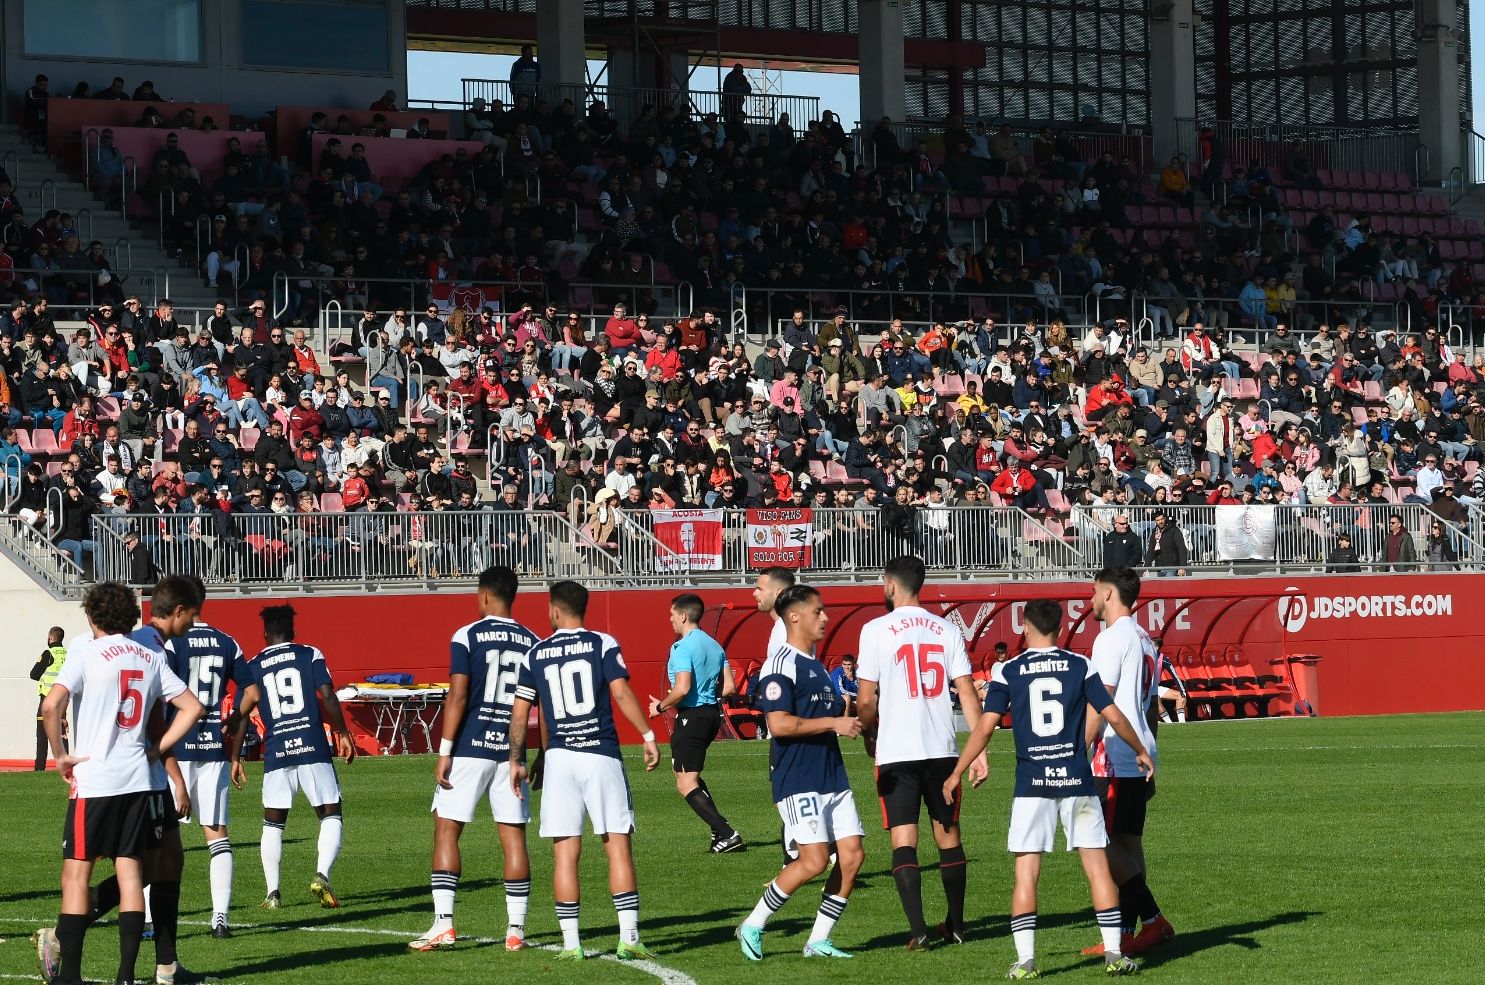 Partido del Sevilla Atlético en el Estadio Jesús Navas